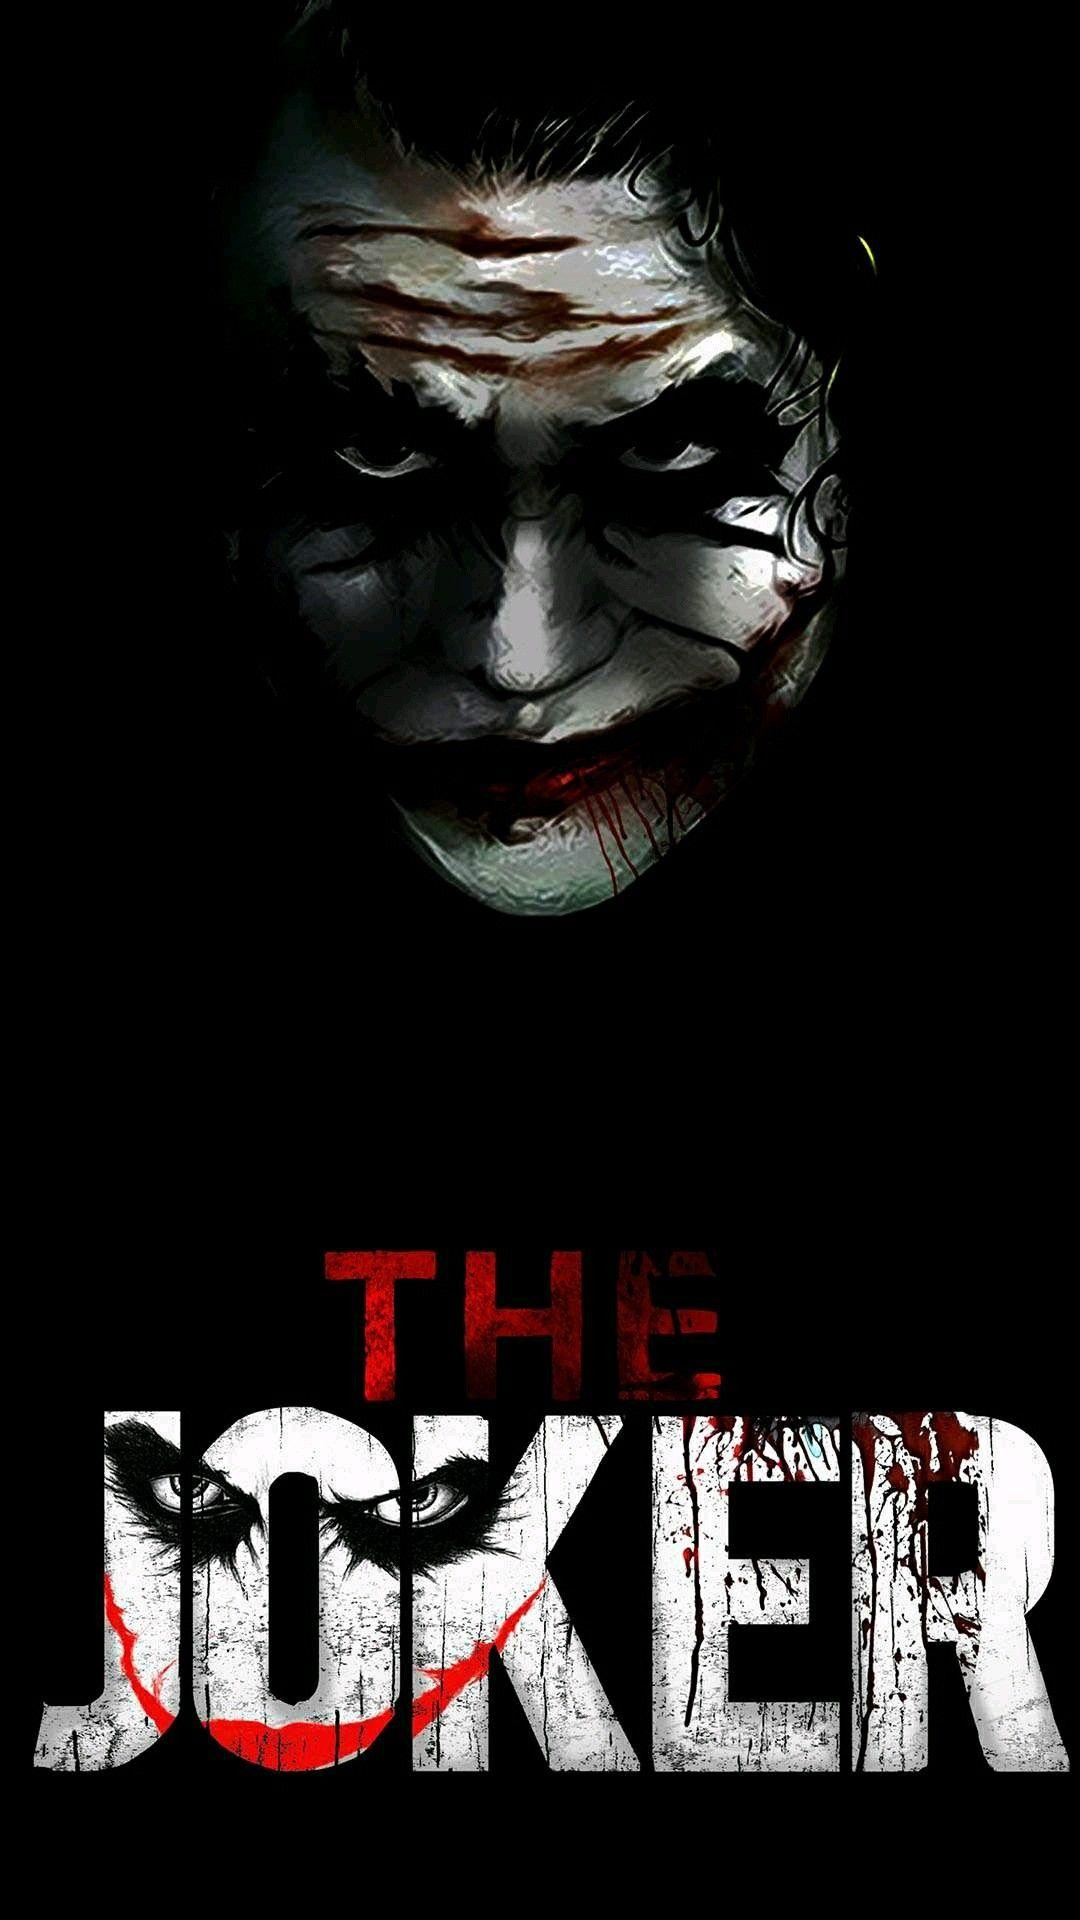 Mr joker. Joker pics, Joker face, Joker artwork